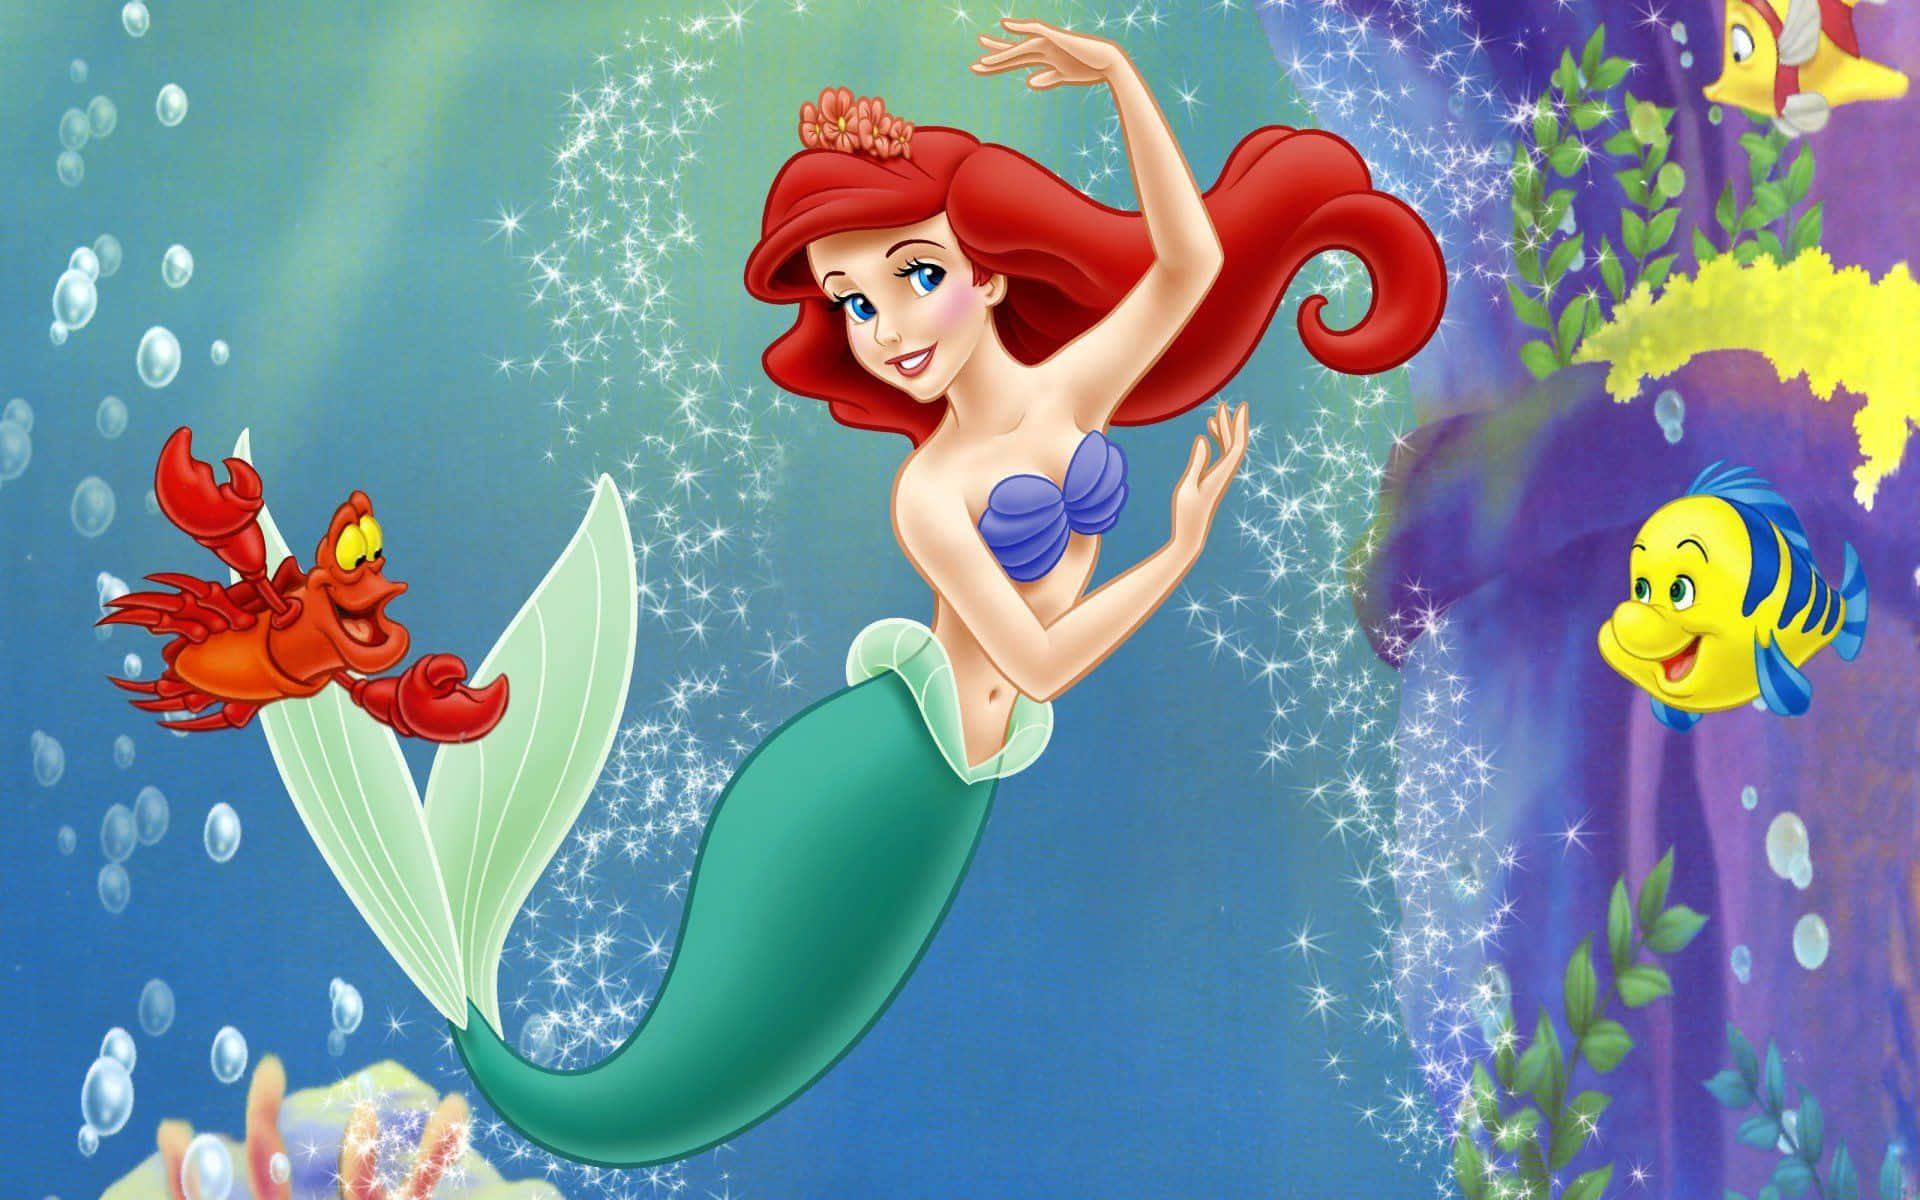 Celebrala Magia De La Infancia Con El Clásico De Disney 'la Sirenita'